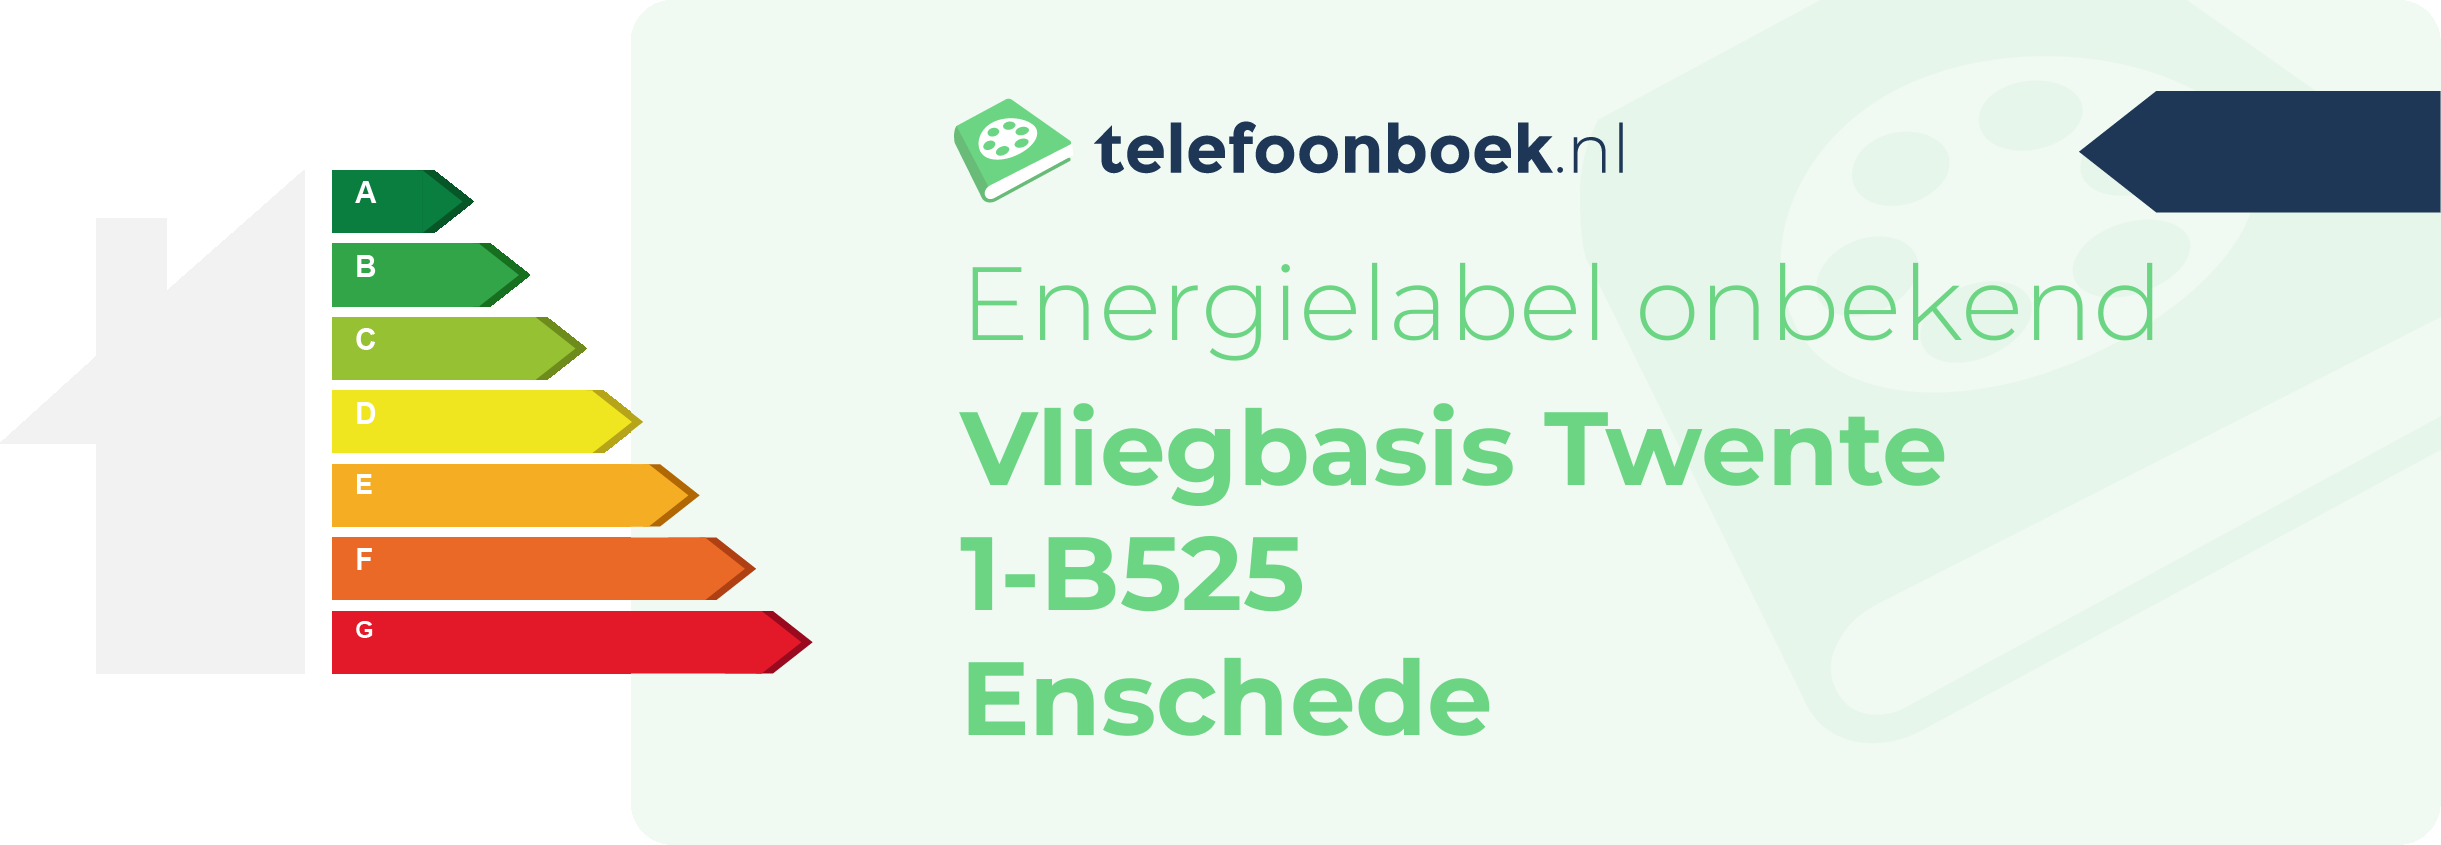 Energielabel Vliegbasis Twente 1-B525 Enschede